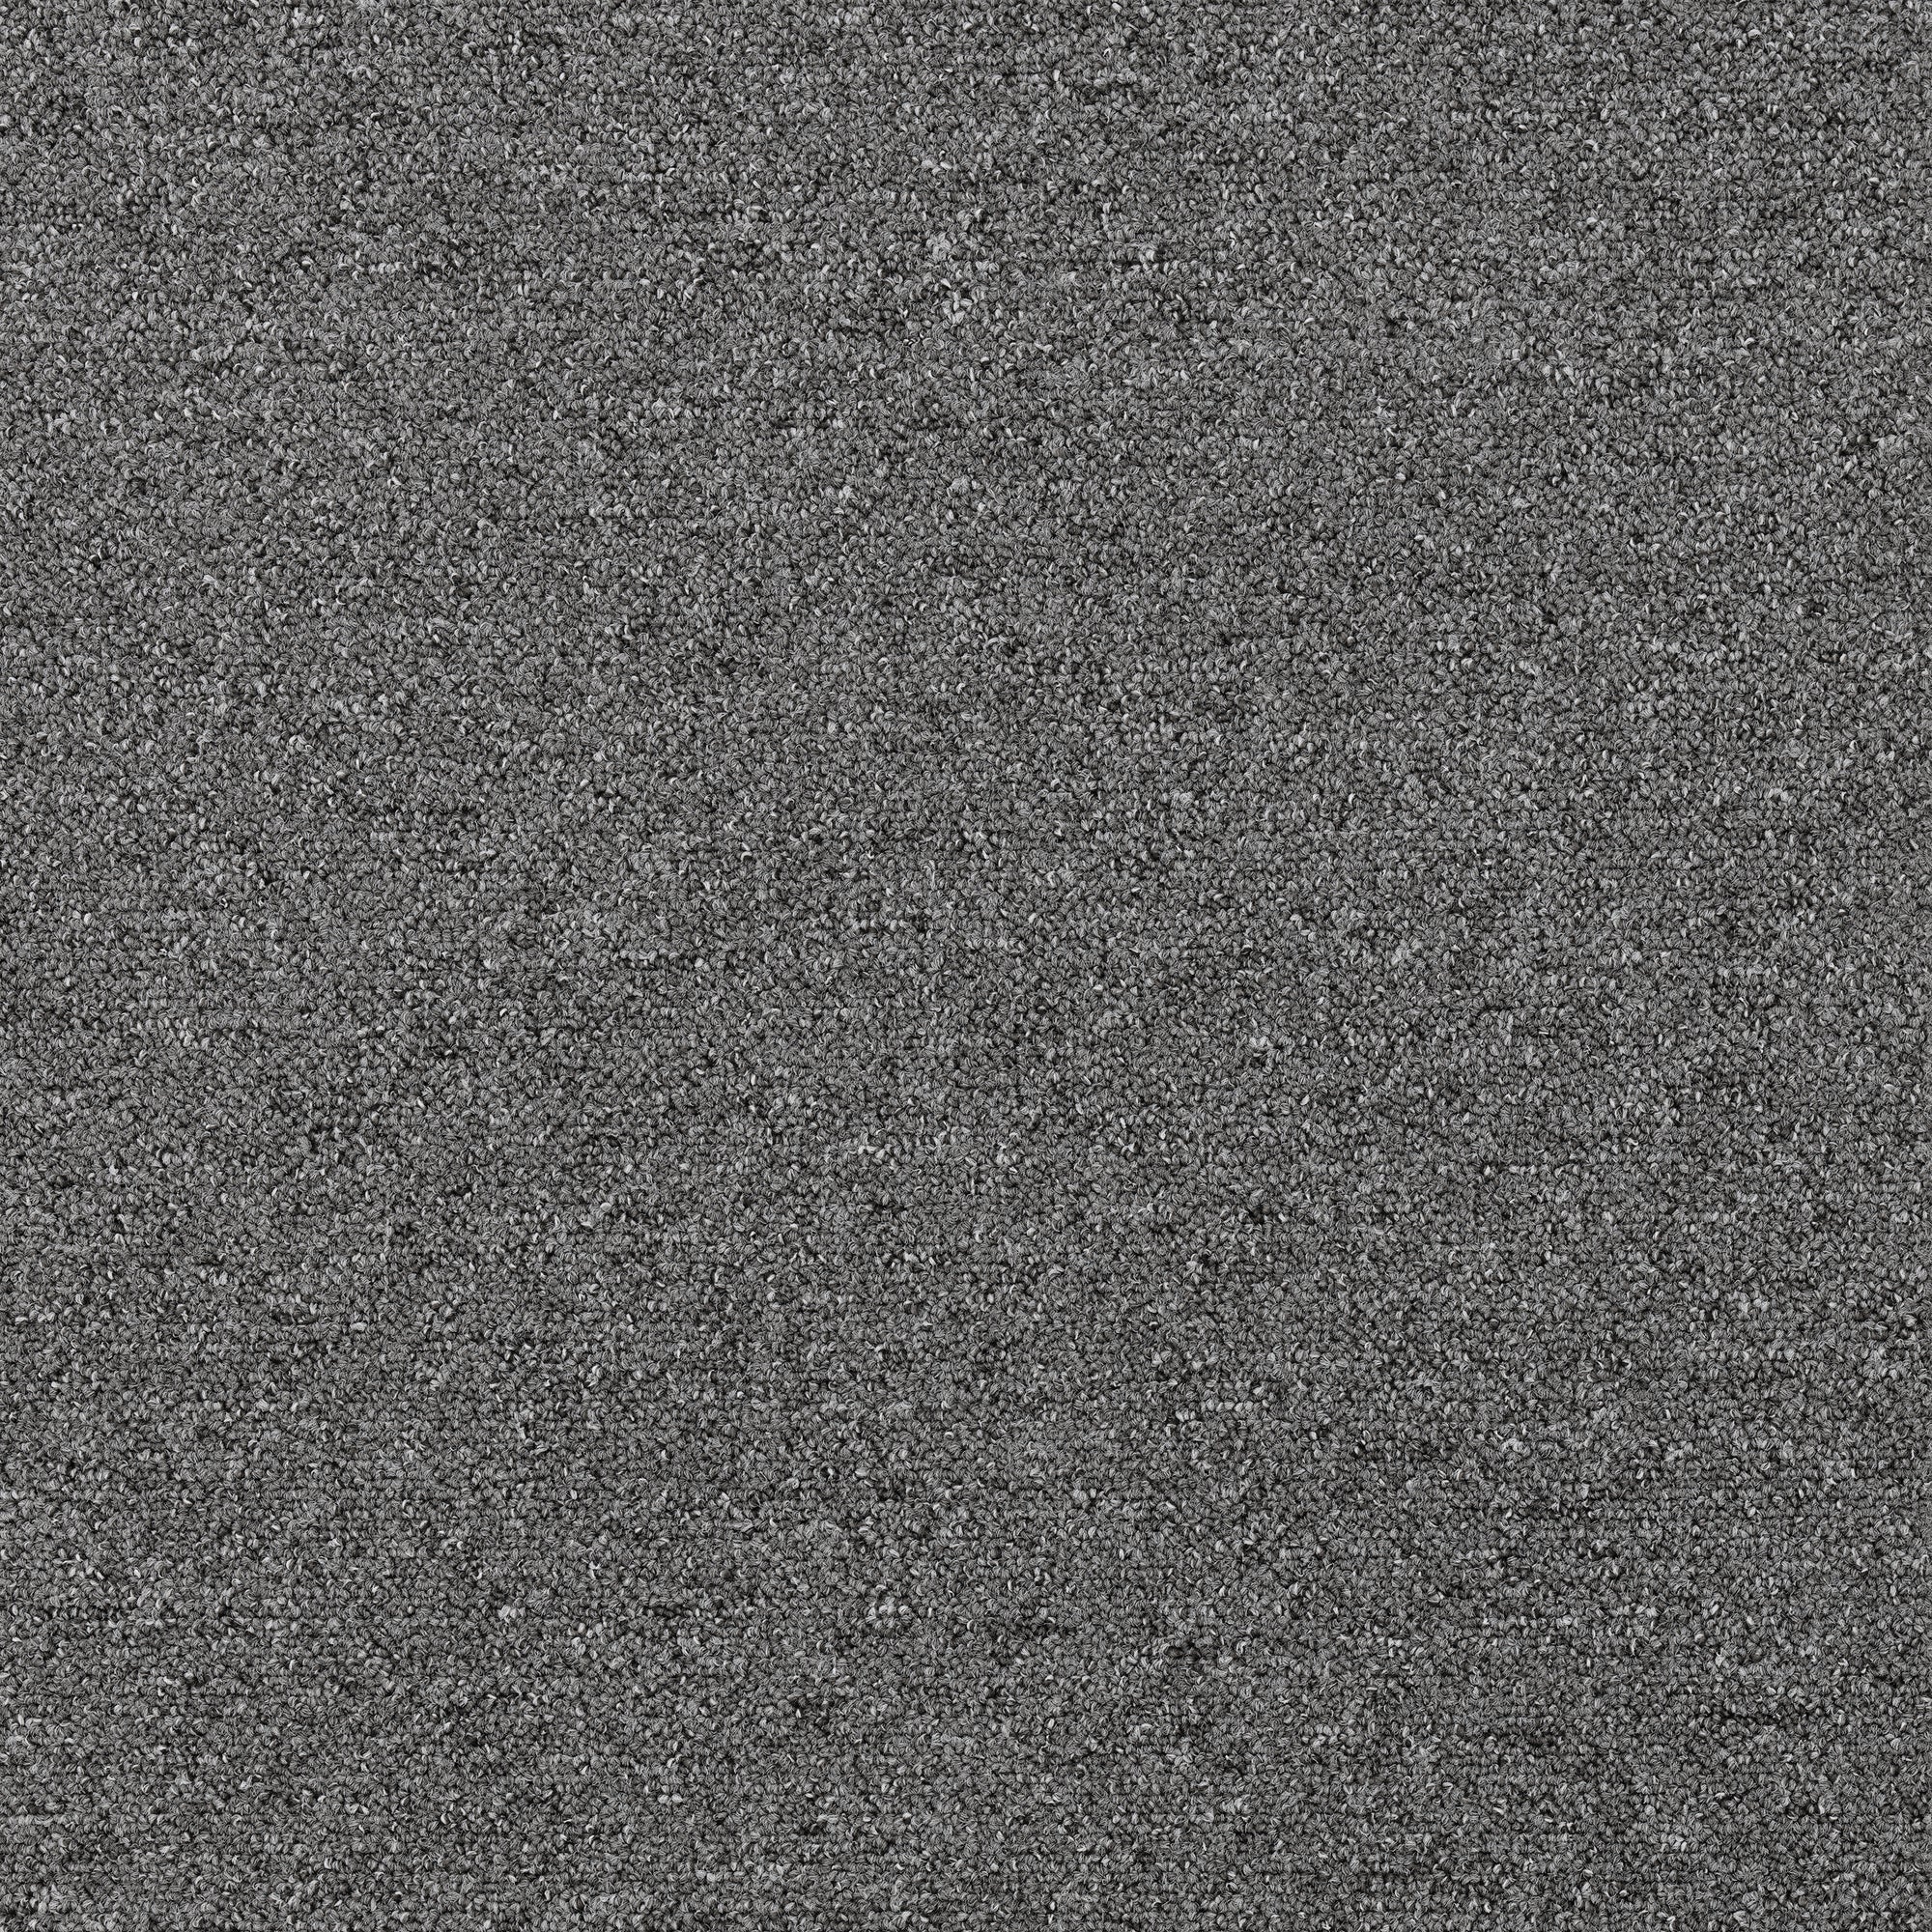 Plusfloor Rekka slate grey carpet tiles for offices